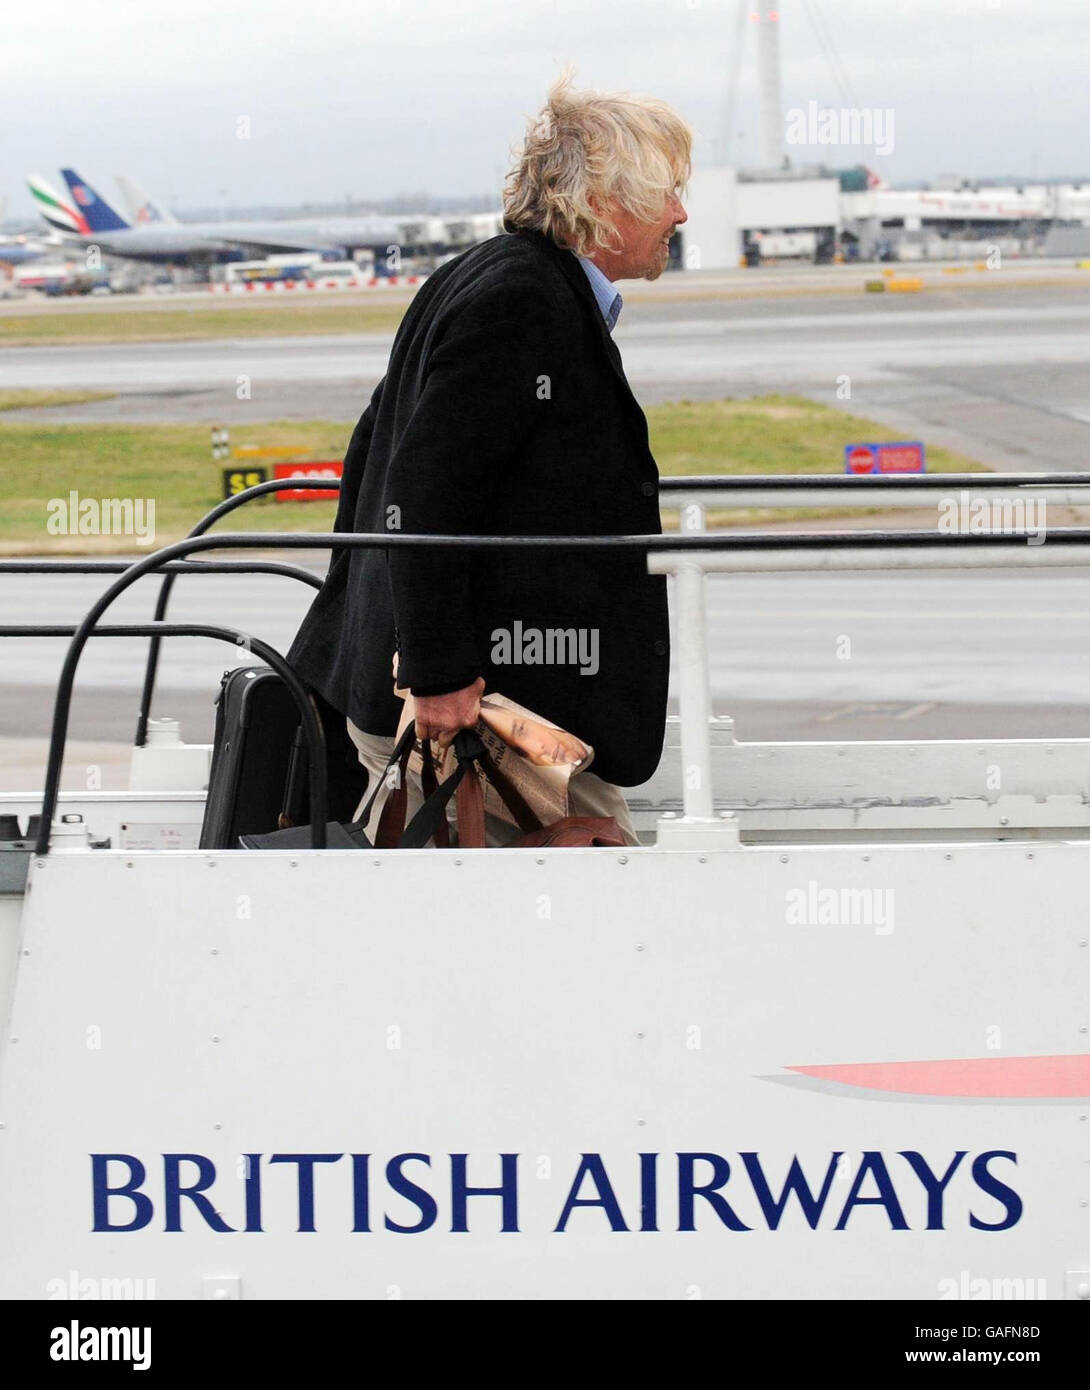 Sir Richard Branson besteigen ein Flugzeug von British Airways, um mit dem britischen Premierminister Gordon Brown als Teil einer Geschäftsdelegation nach China zu reisen. Ein Boeing 777-Flugzeug von British Airways, das aus China einfliegt und kurz vor der Start- und Landebahn am Flughafen Heathrow landete, um das Flugzeug des Premierministers zu verzögern. Stockfoto